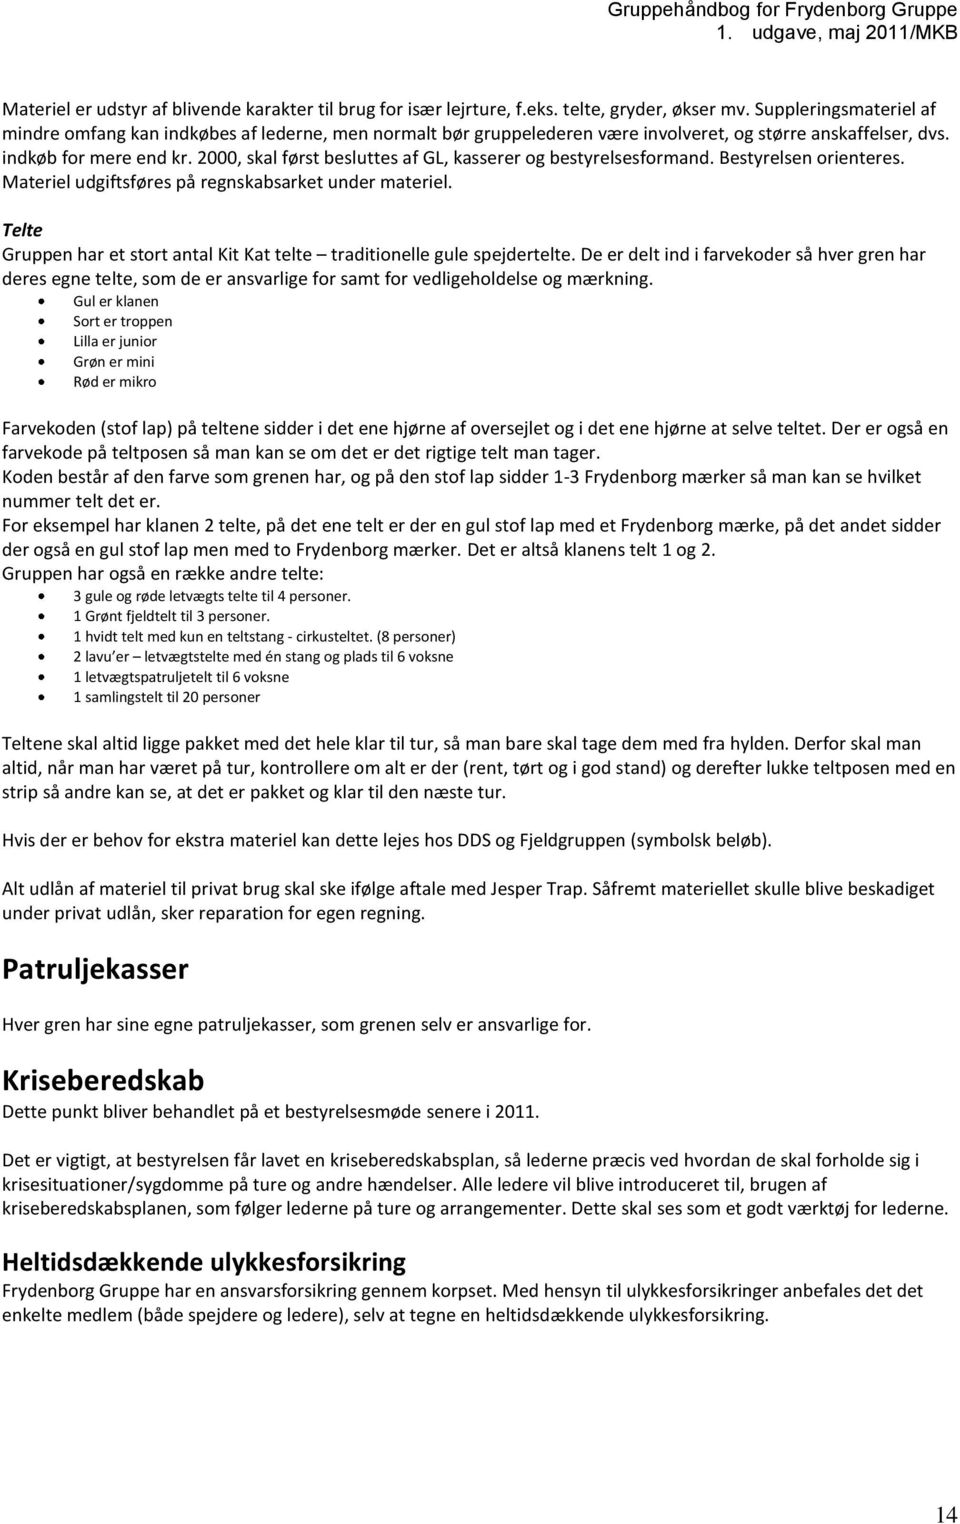 Gruppehåndbog for Frydenborg Gruppe 1. udgave, maj 2011/MKB.  Indholdsfortegnelse - PDF Gratis download